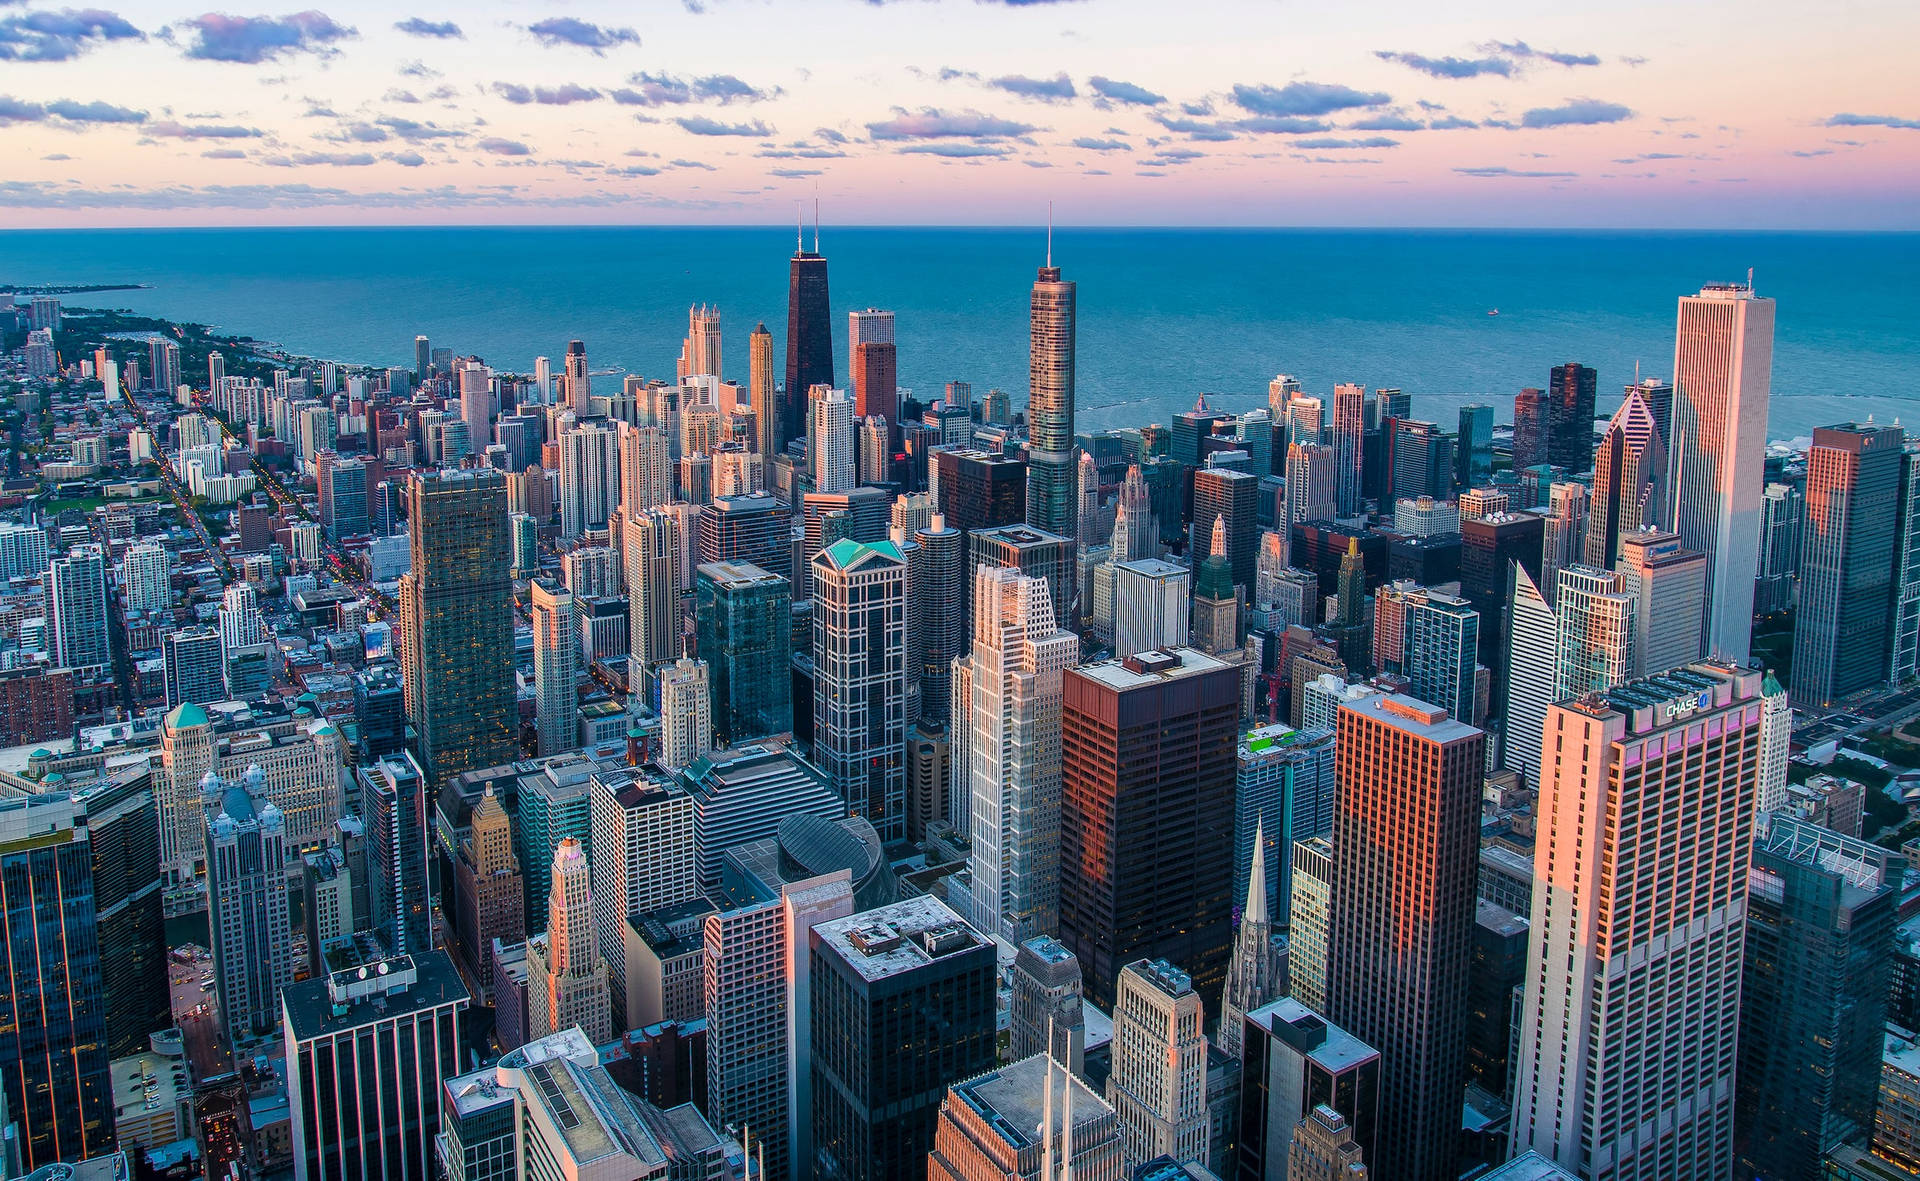 Free Chicago Skyline Wallpaper Downloads, Chicago Skyline Wallpaper for FREE